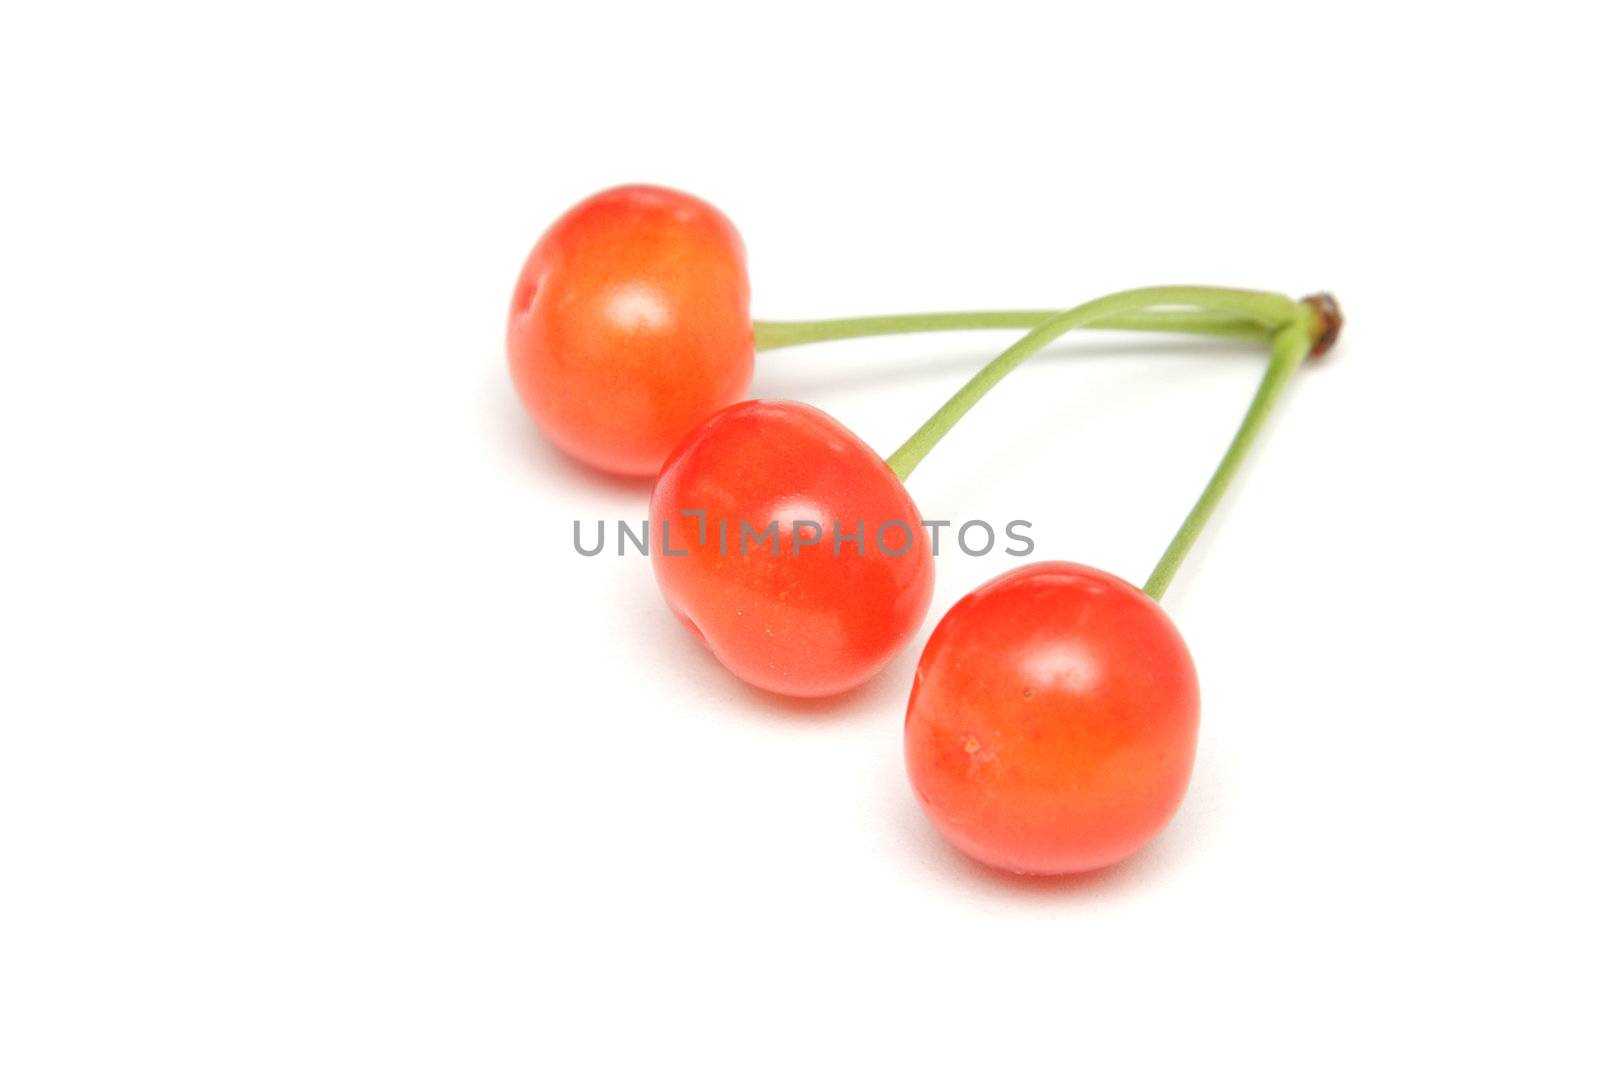 Cherries by pulen